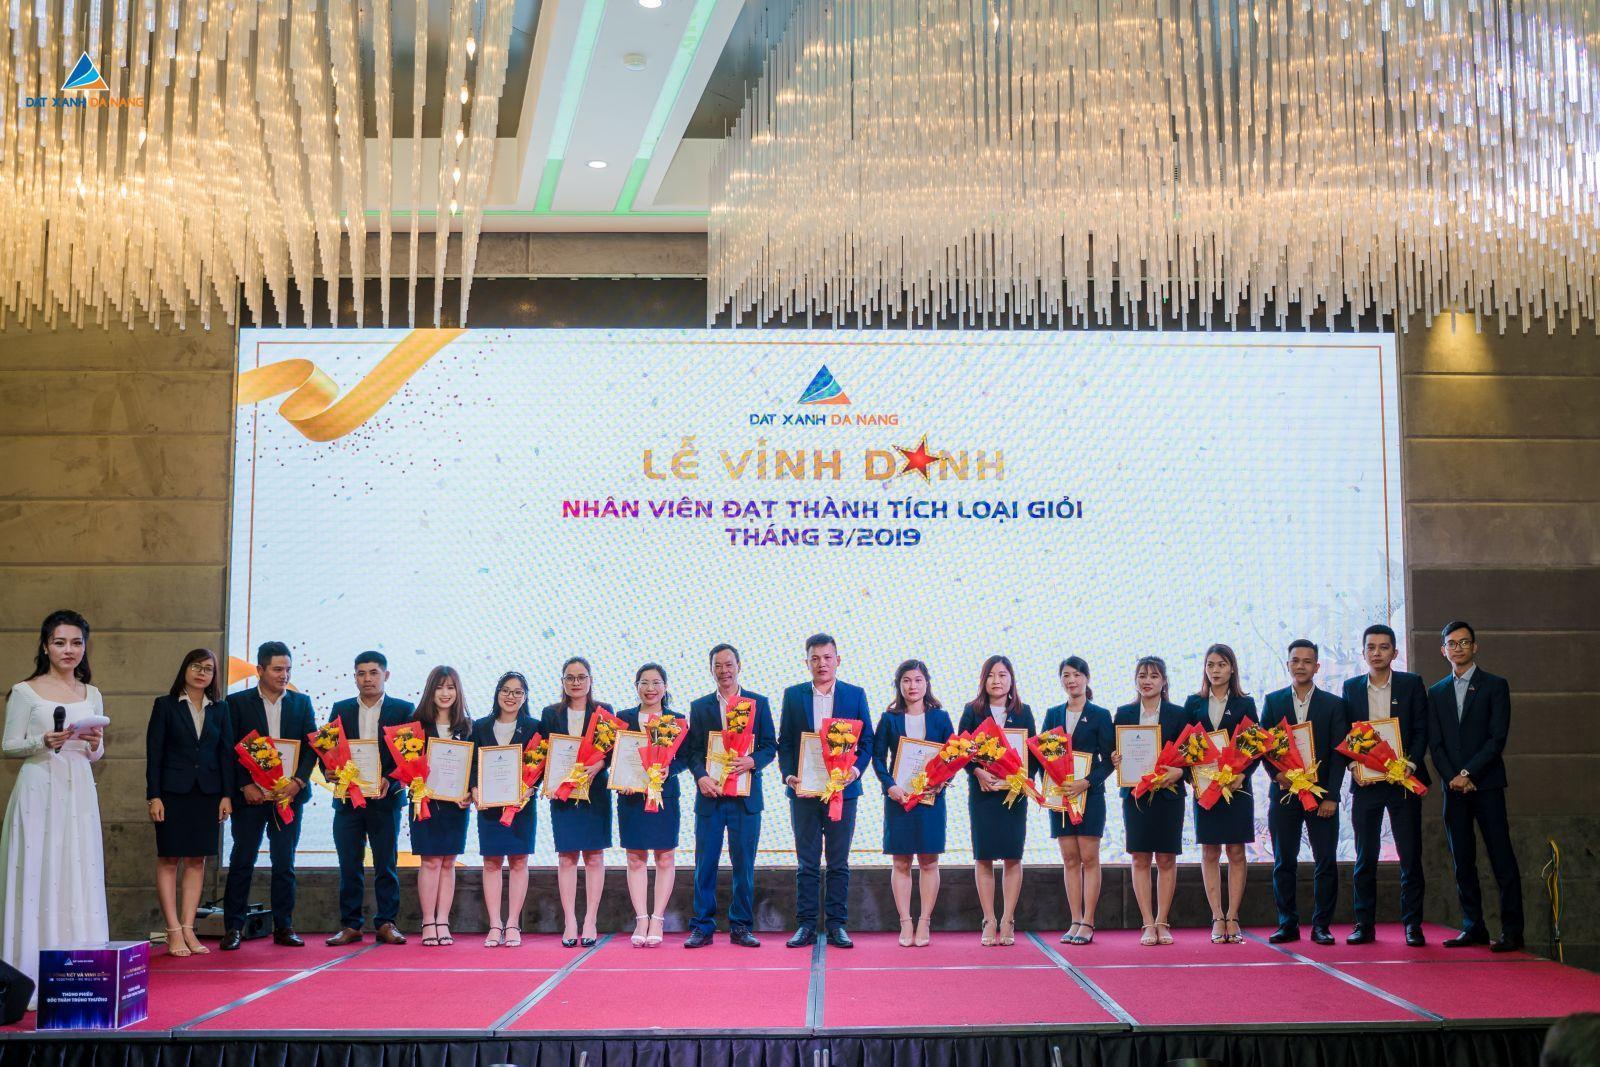 CHÁY HẾT MÌNH CÙNG LỄ TỔNG KẾT QUÝ I NĂM 2019 “TOGETHER – WE WILL WIN” - Viet Nam Smart City